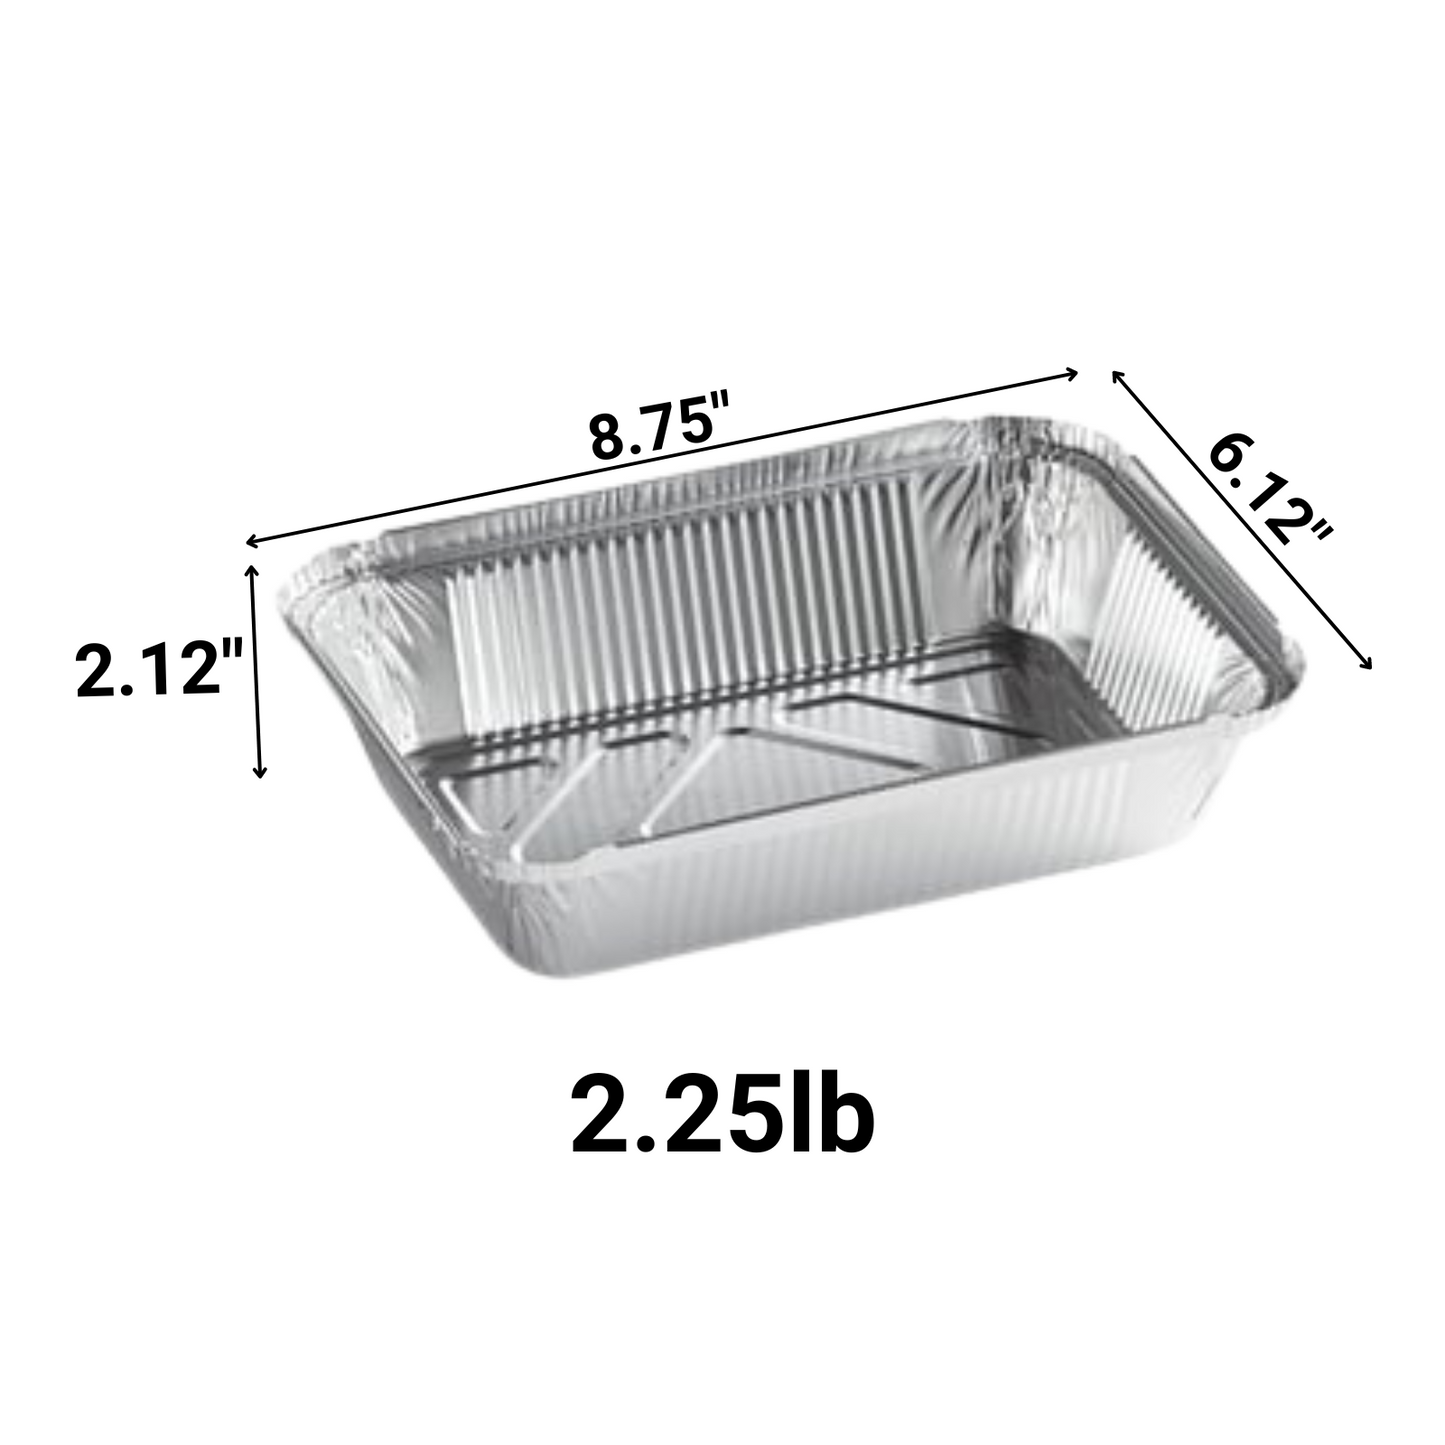 *WHOLESALE* Disposable Aluminum 2.25Lb Oblong Pan 8.75" x 6.12" | 500 ct/case Disposable VeZee   